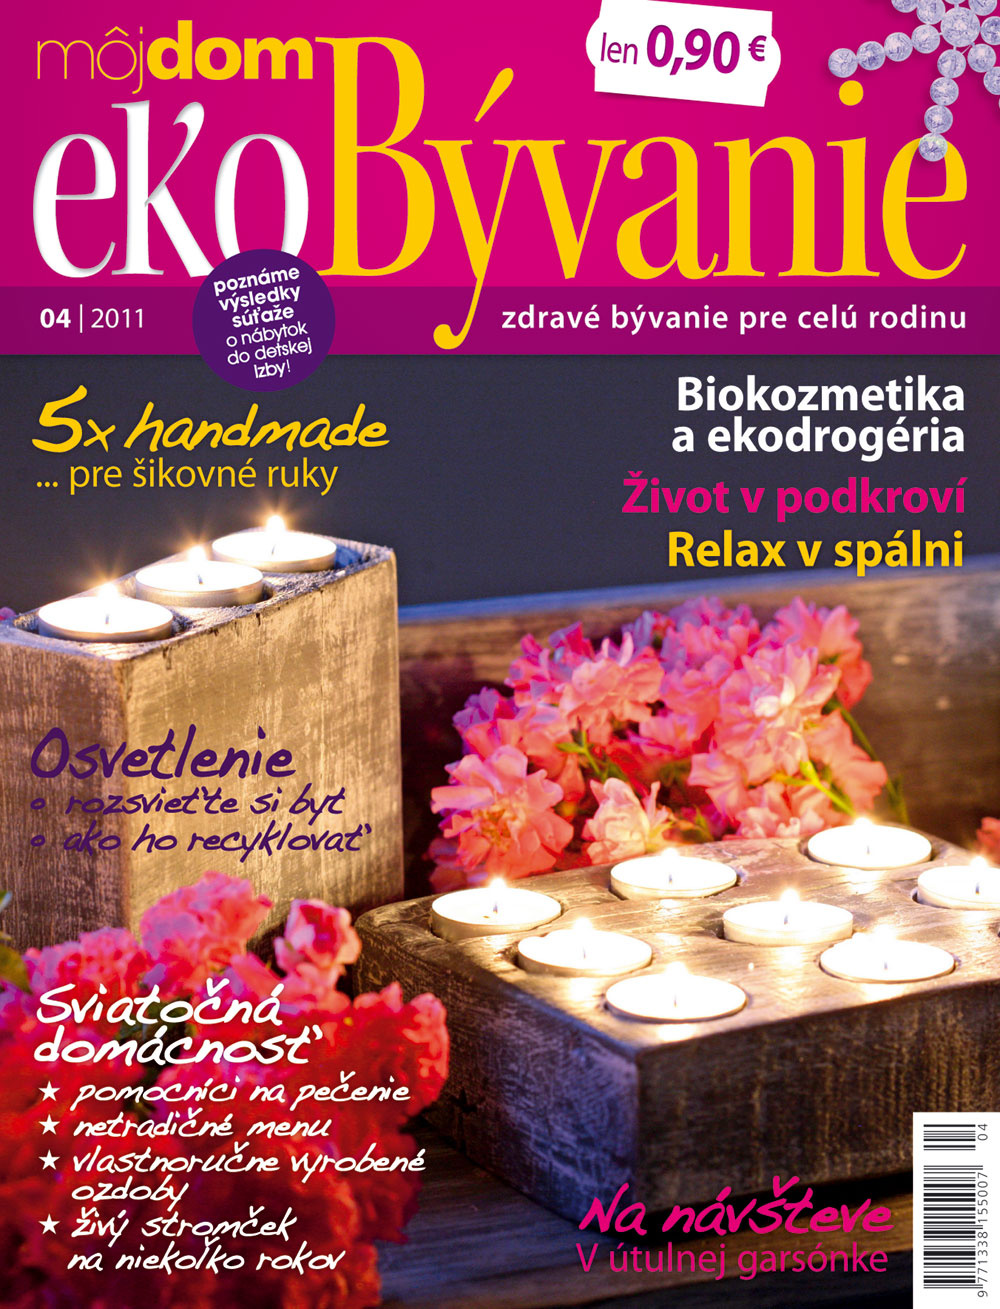 Nové číslo časopisu Môj dom ekoBývanie 04/2011 v predaji